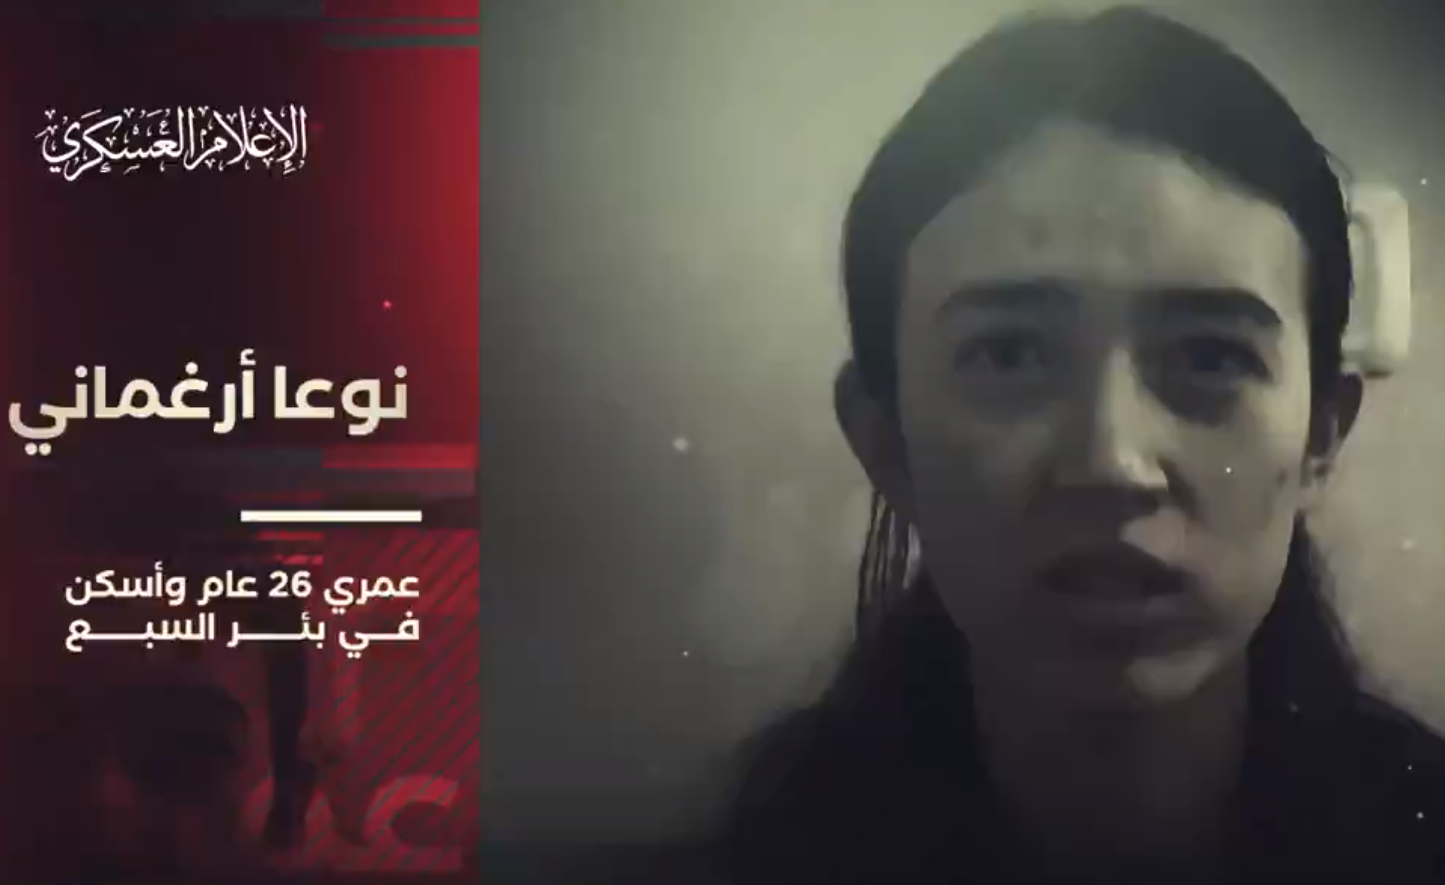 كتائب القسام تنشر فيديو جديدة لأسرى إسرائيليين يناشدون نتنياهو بوقف إطلاق النار